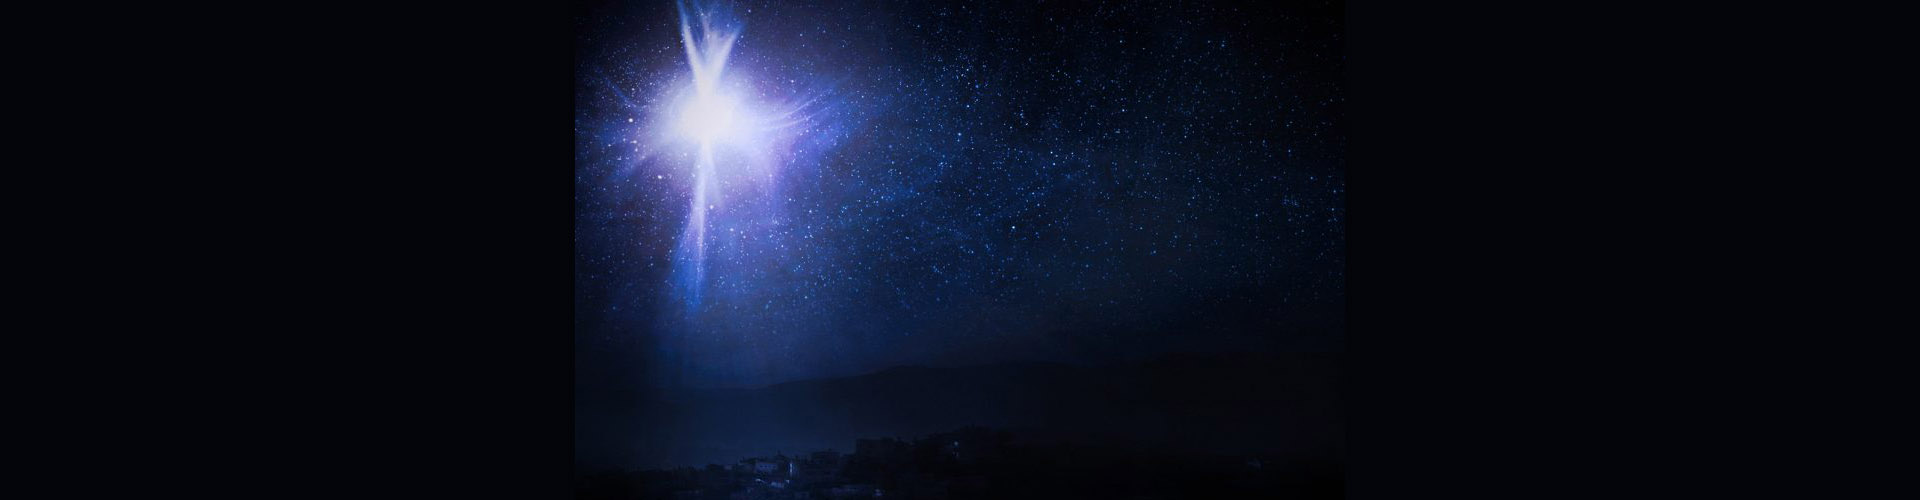 Qué sabemos de la Estrella de Belén, el misterioso cuerpo celeste que dio forma al mito de los Reyes Magos